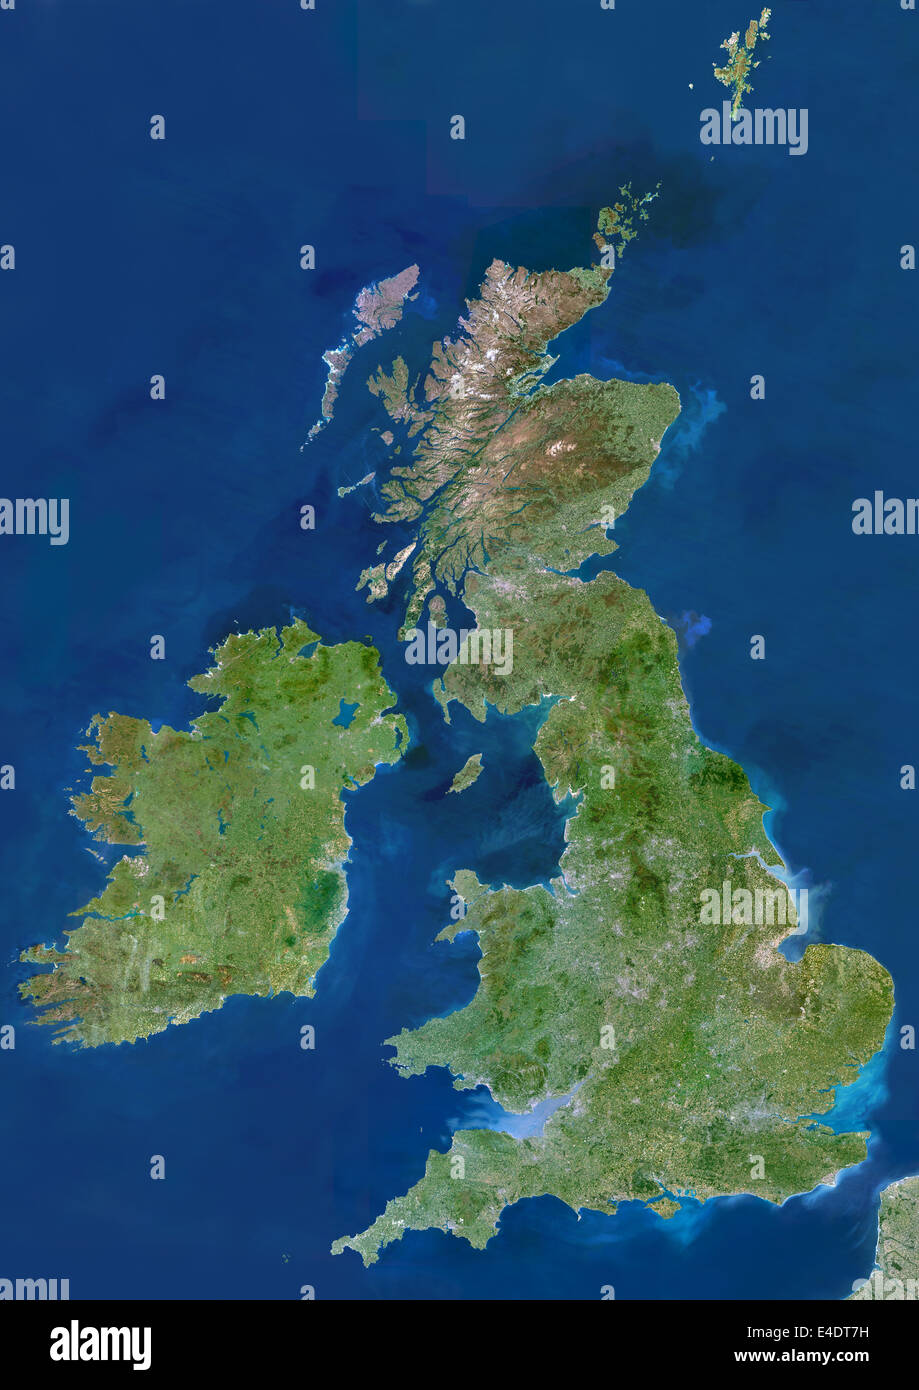 Britischen Inseln, Echtfarben-Satellitenbild. Britischen Inseln, Satellitenbild. Die Insel Großbritannien umfasst England (centr Stockfoto